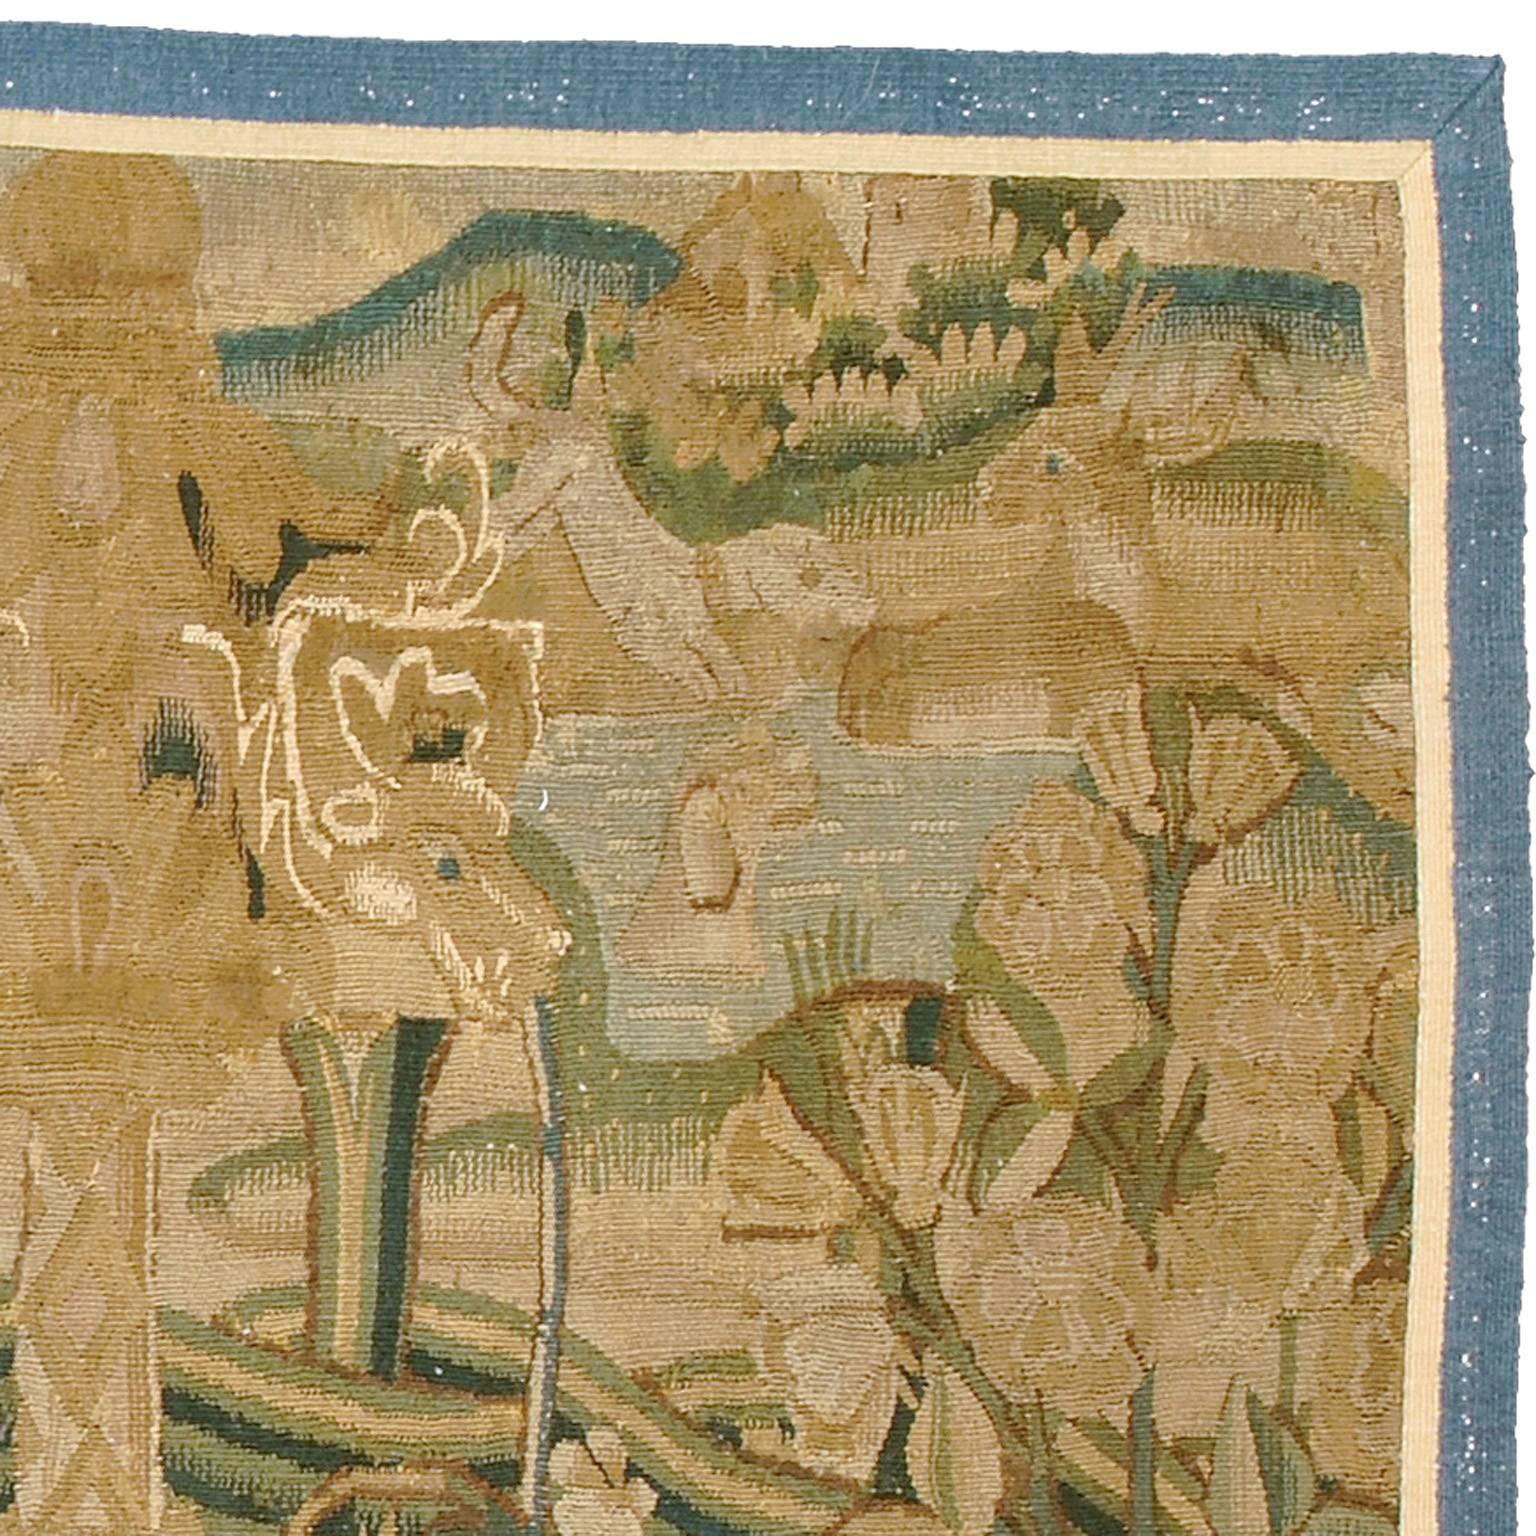 Frühe flämische spätgotische Tapisserie aus dem 16. Jahrhundert, möglicherweise aus Tournai.
Provenienz: Dinolevi, Florenz, um 1960.